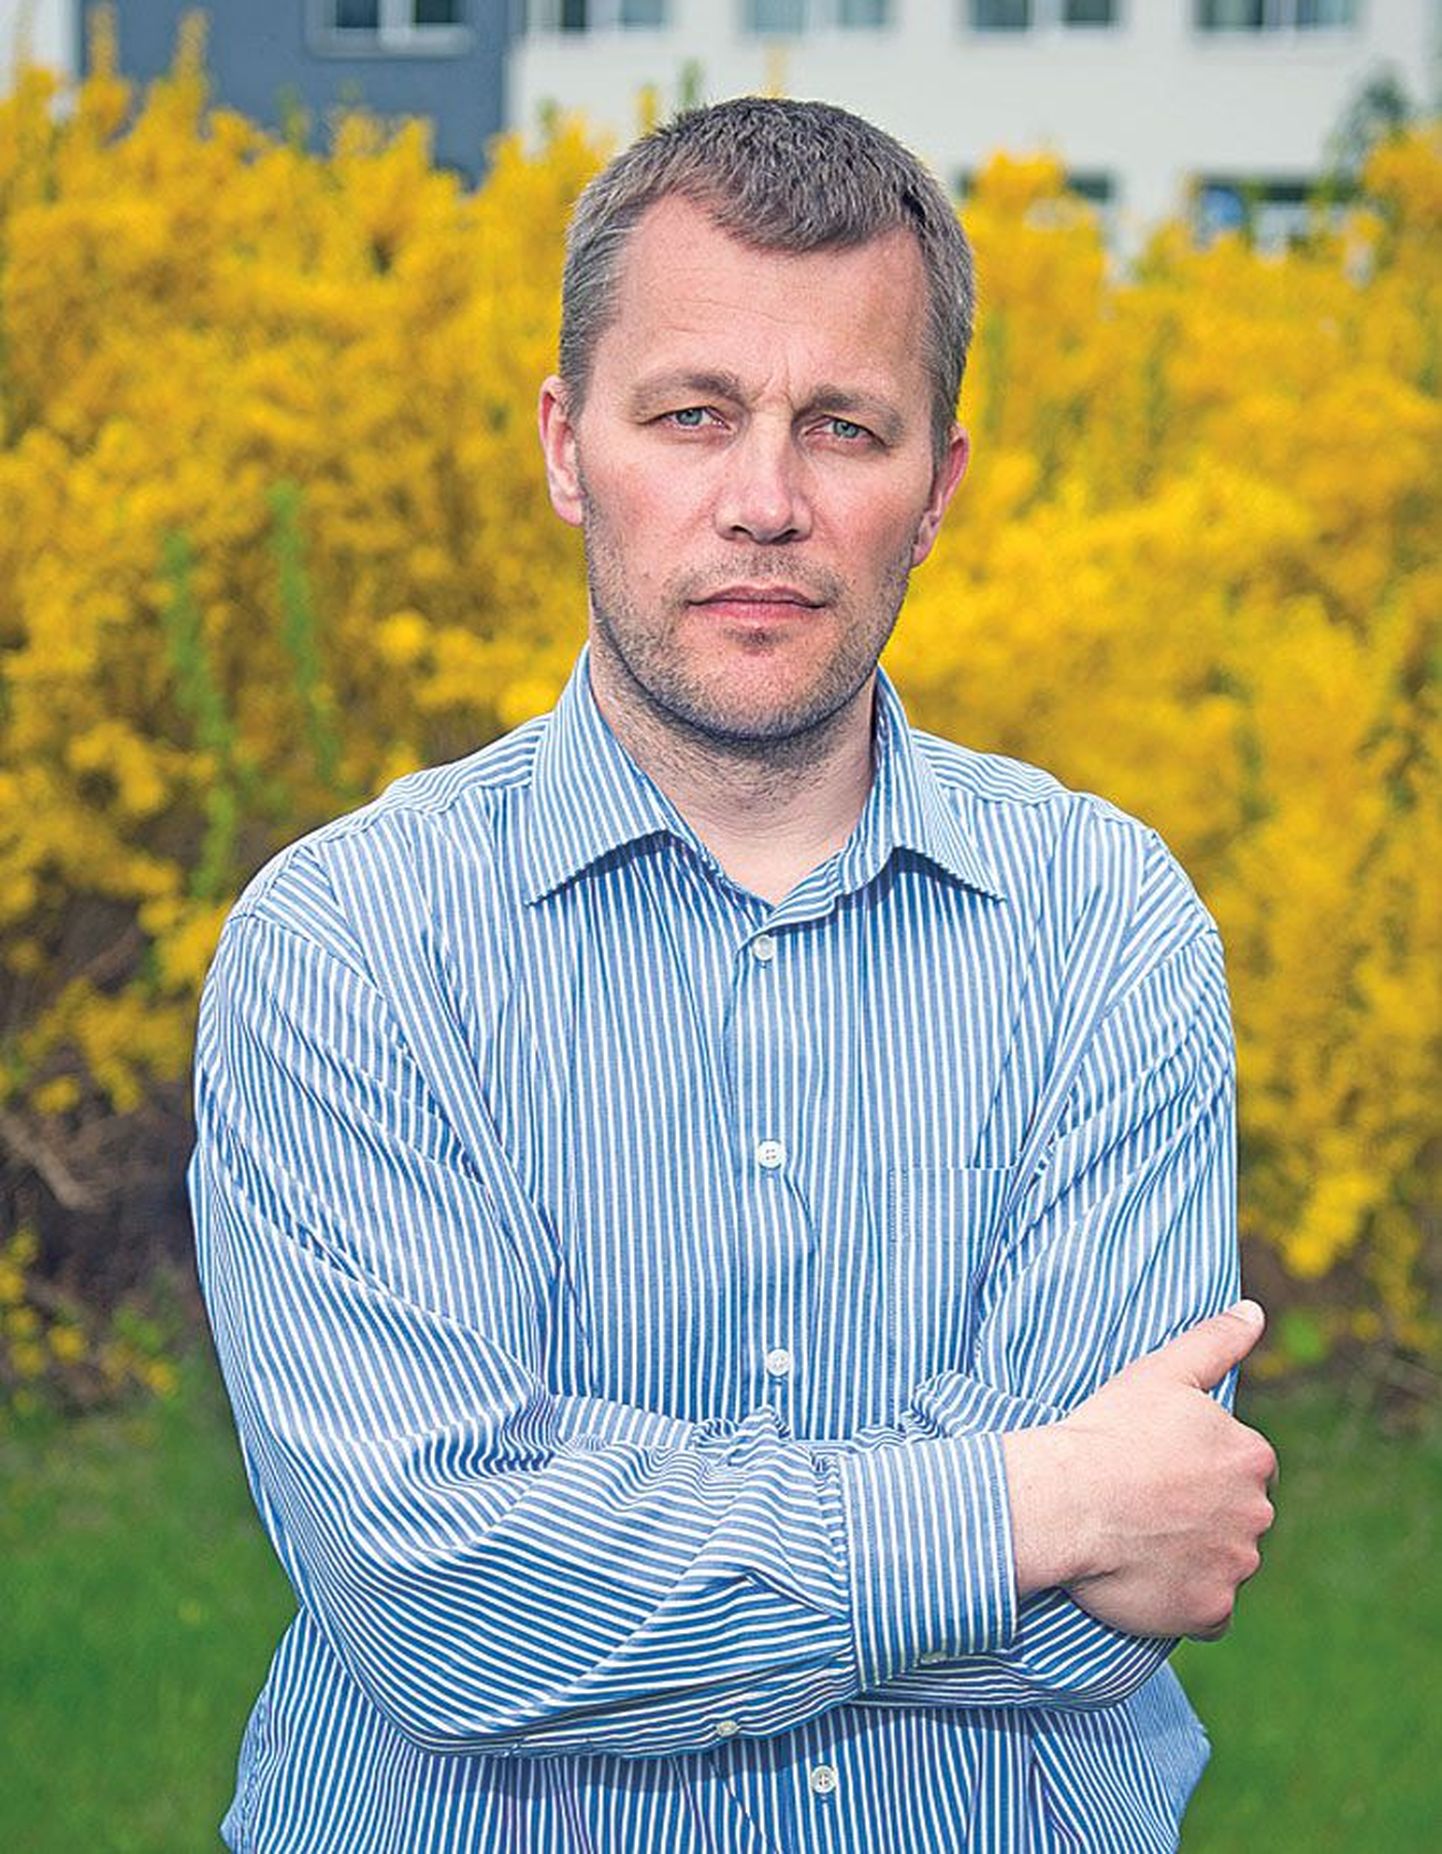 Eesti Energia наняла бывшего посла в Литве Андреса Троппа в 2008 году продвигать атомные проекты, сейчас его задачи на предприятии в основном изменились.